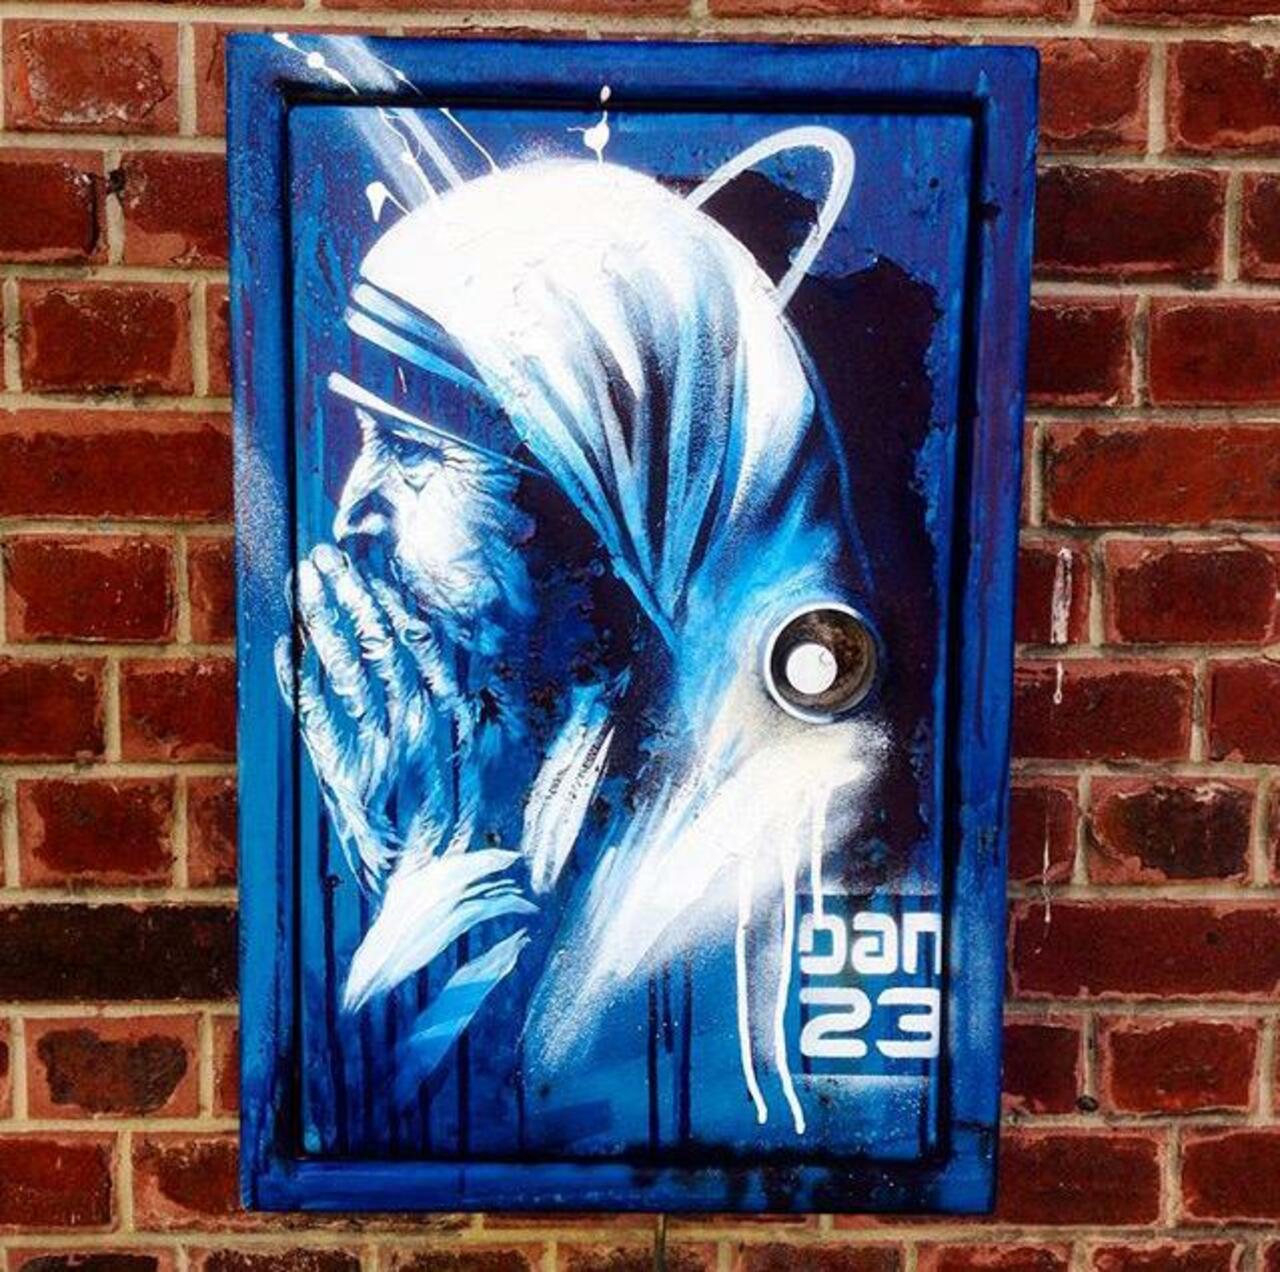 New Street Art 'Détail Spirit' by Dan23 

#art #graffiti #mural #streetart http://t.co/YpVcH3wnWt RT @GoogleStreetArt